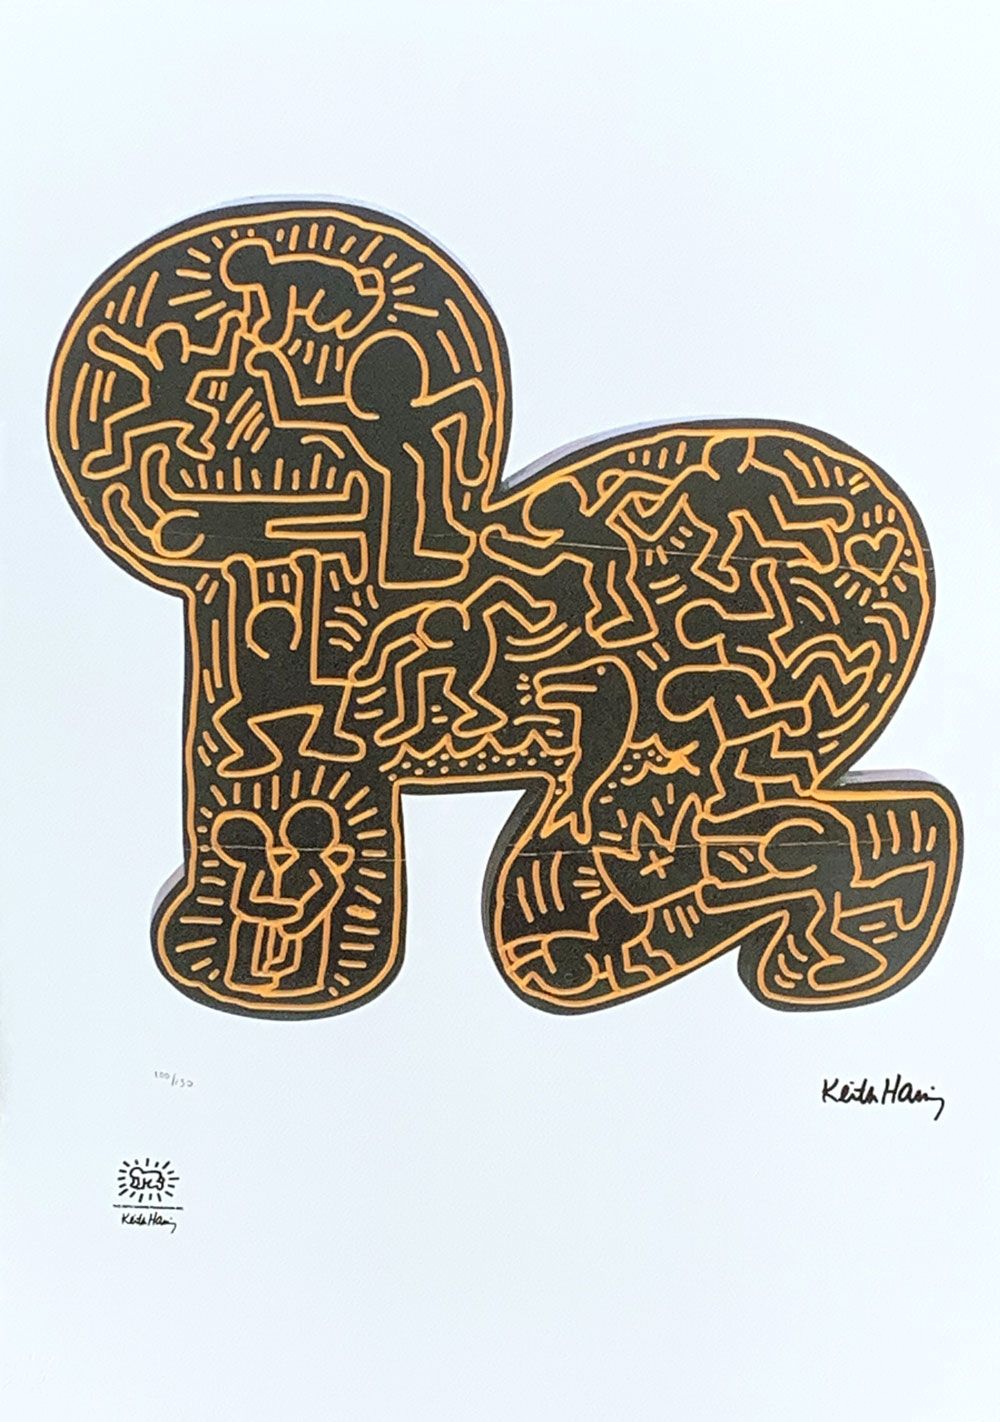 Keith Haring SERIGRAPHIE "BABY" von Keith HARING (1958-1990)

In der Platte sign&hellip;